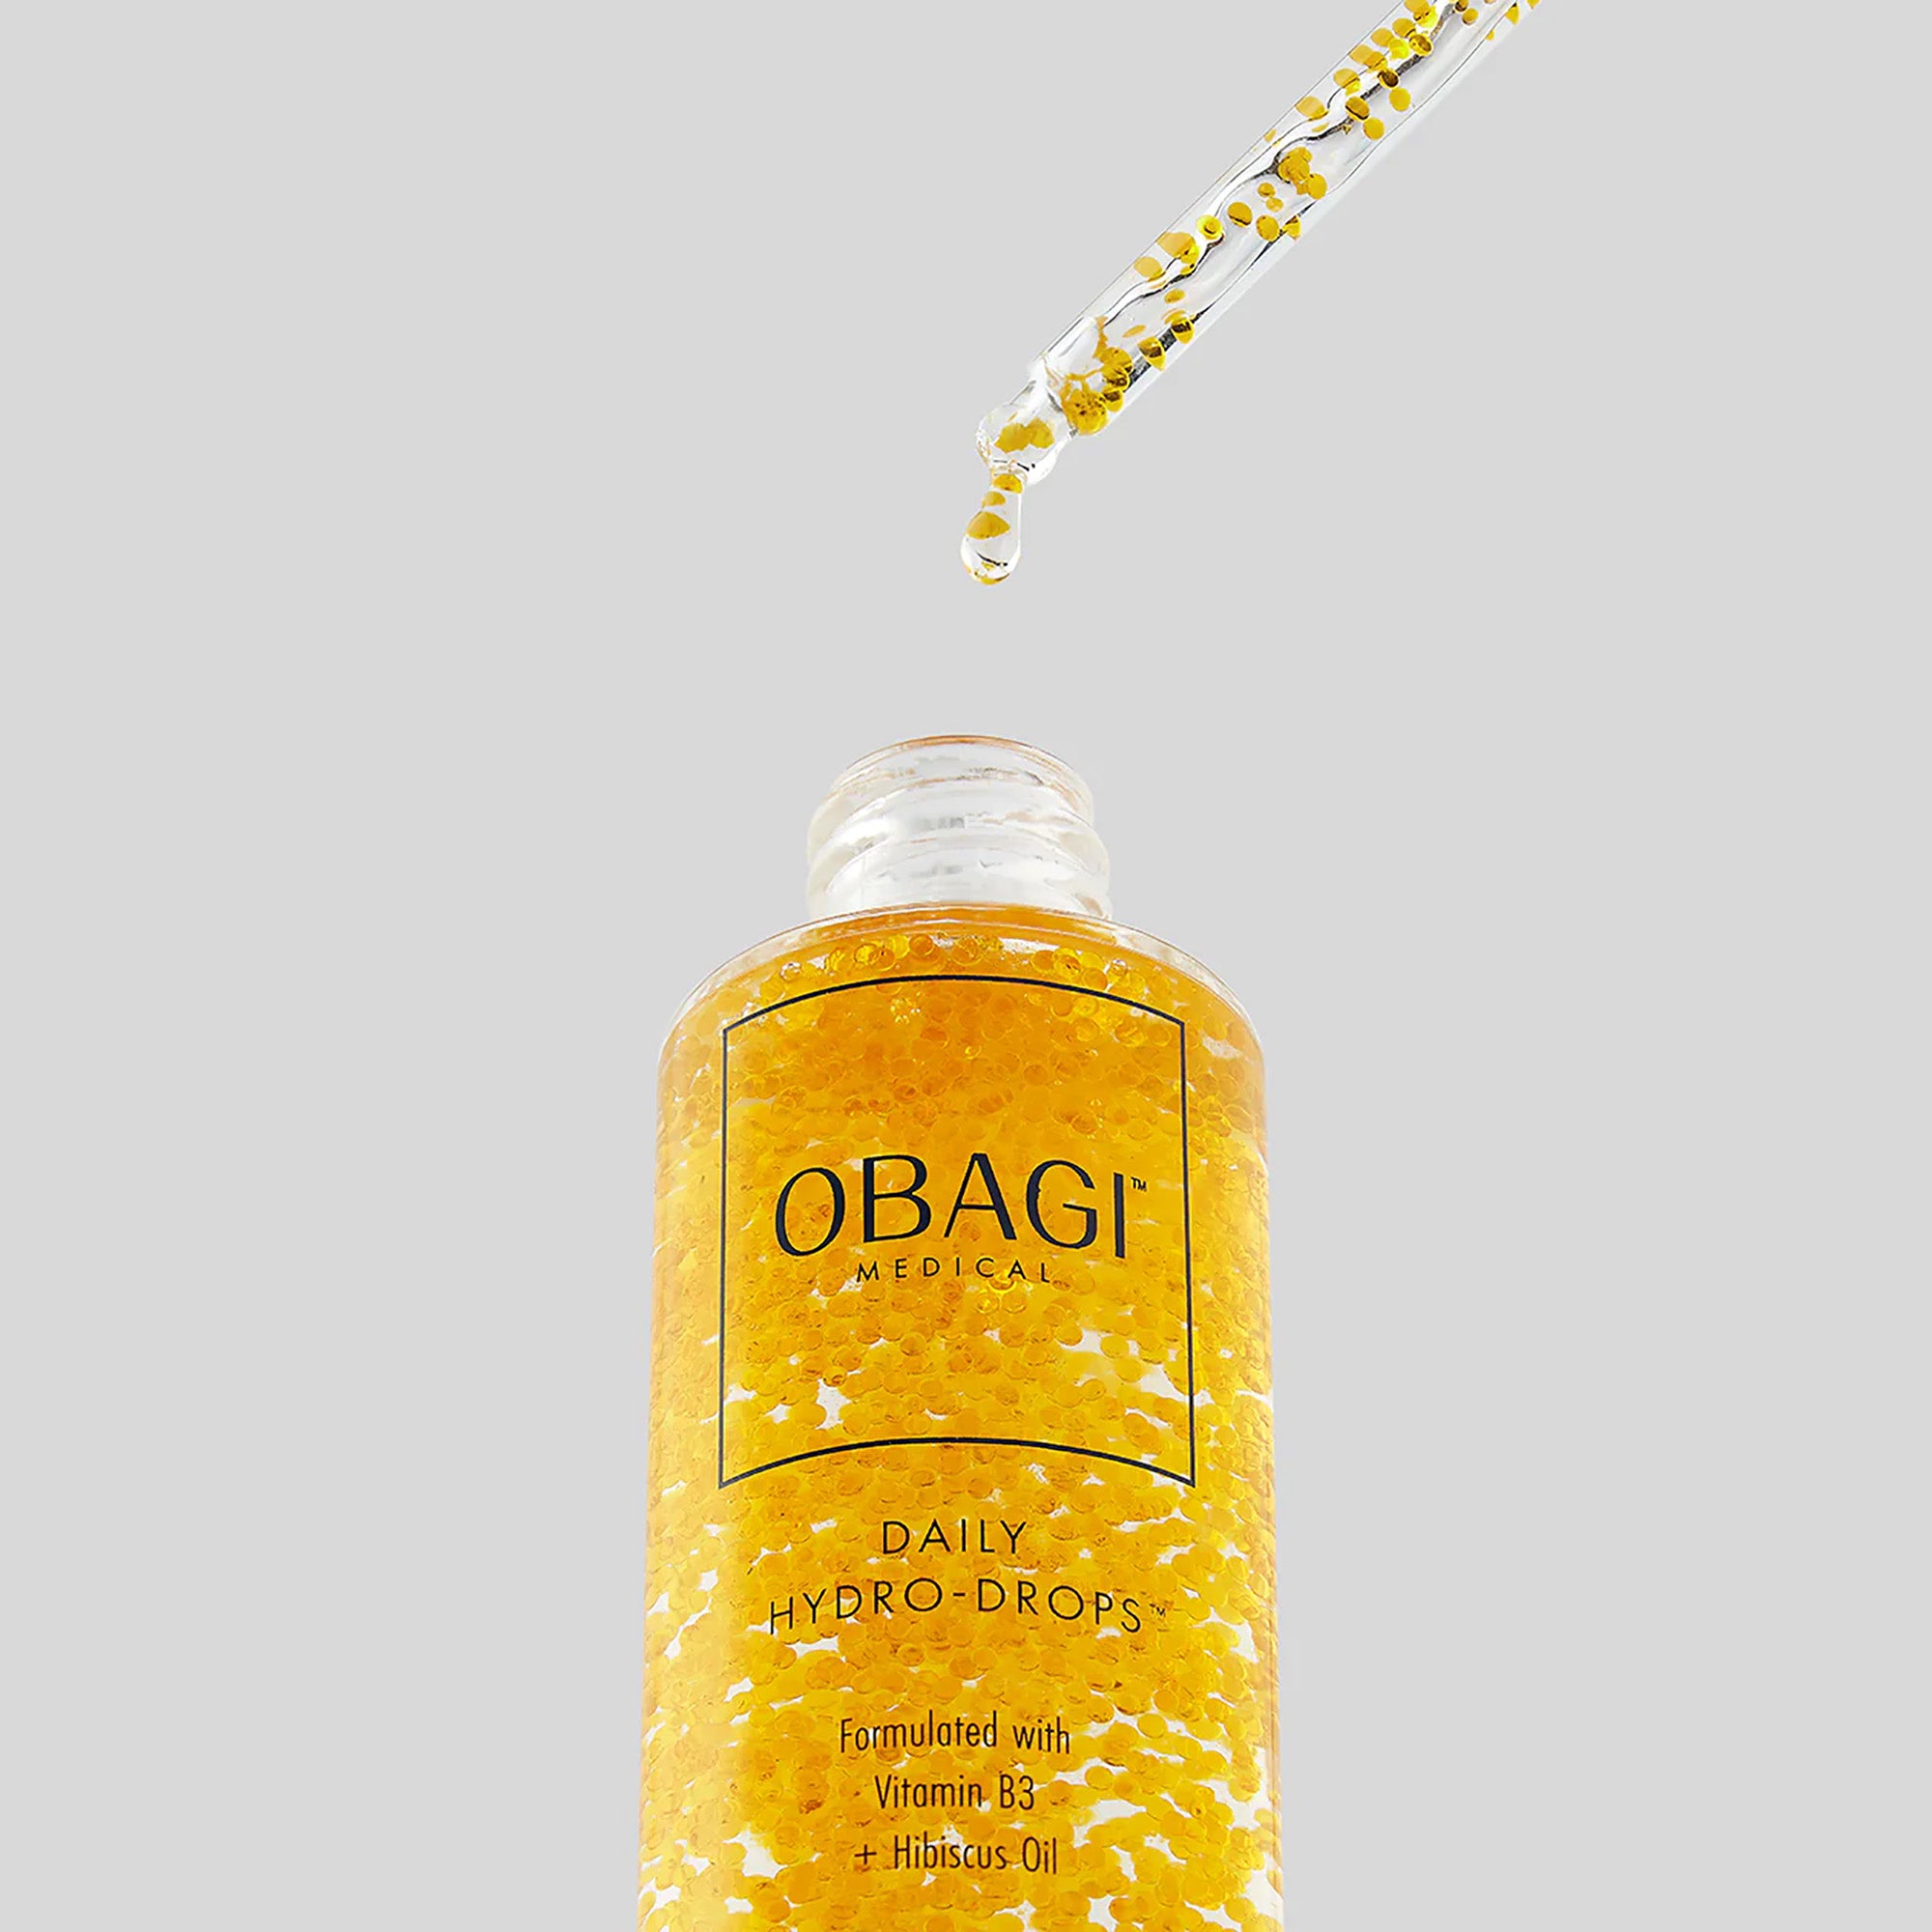 Obagi Hydro Drops Facial Serum